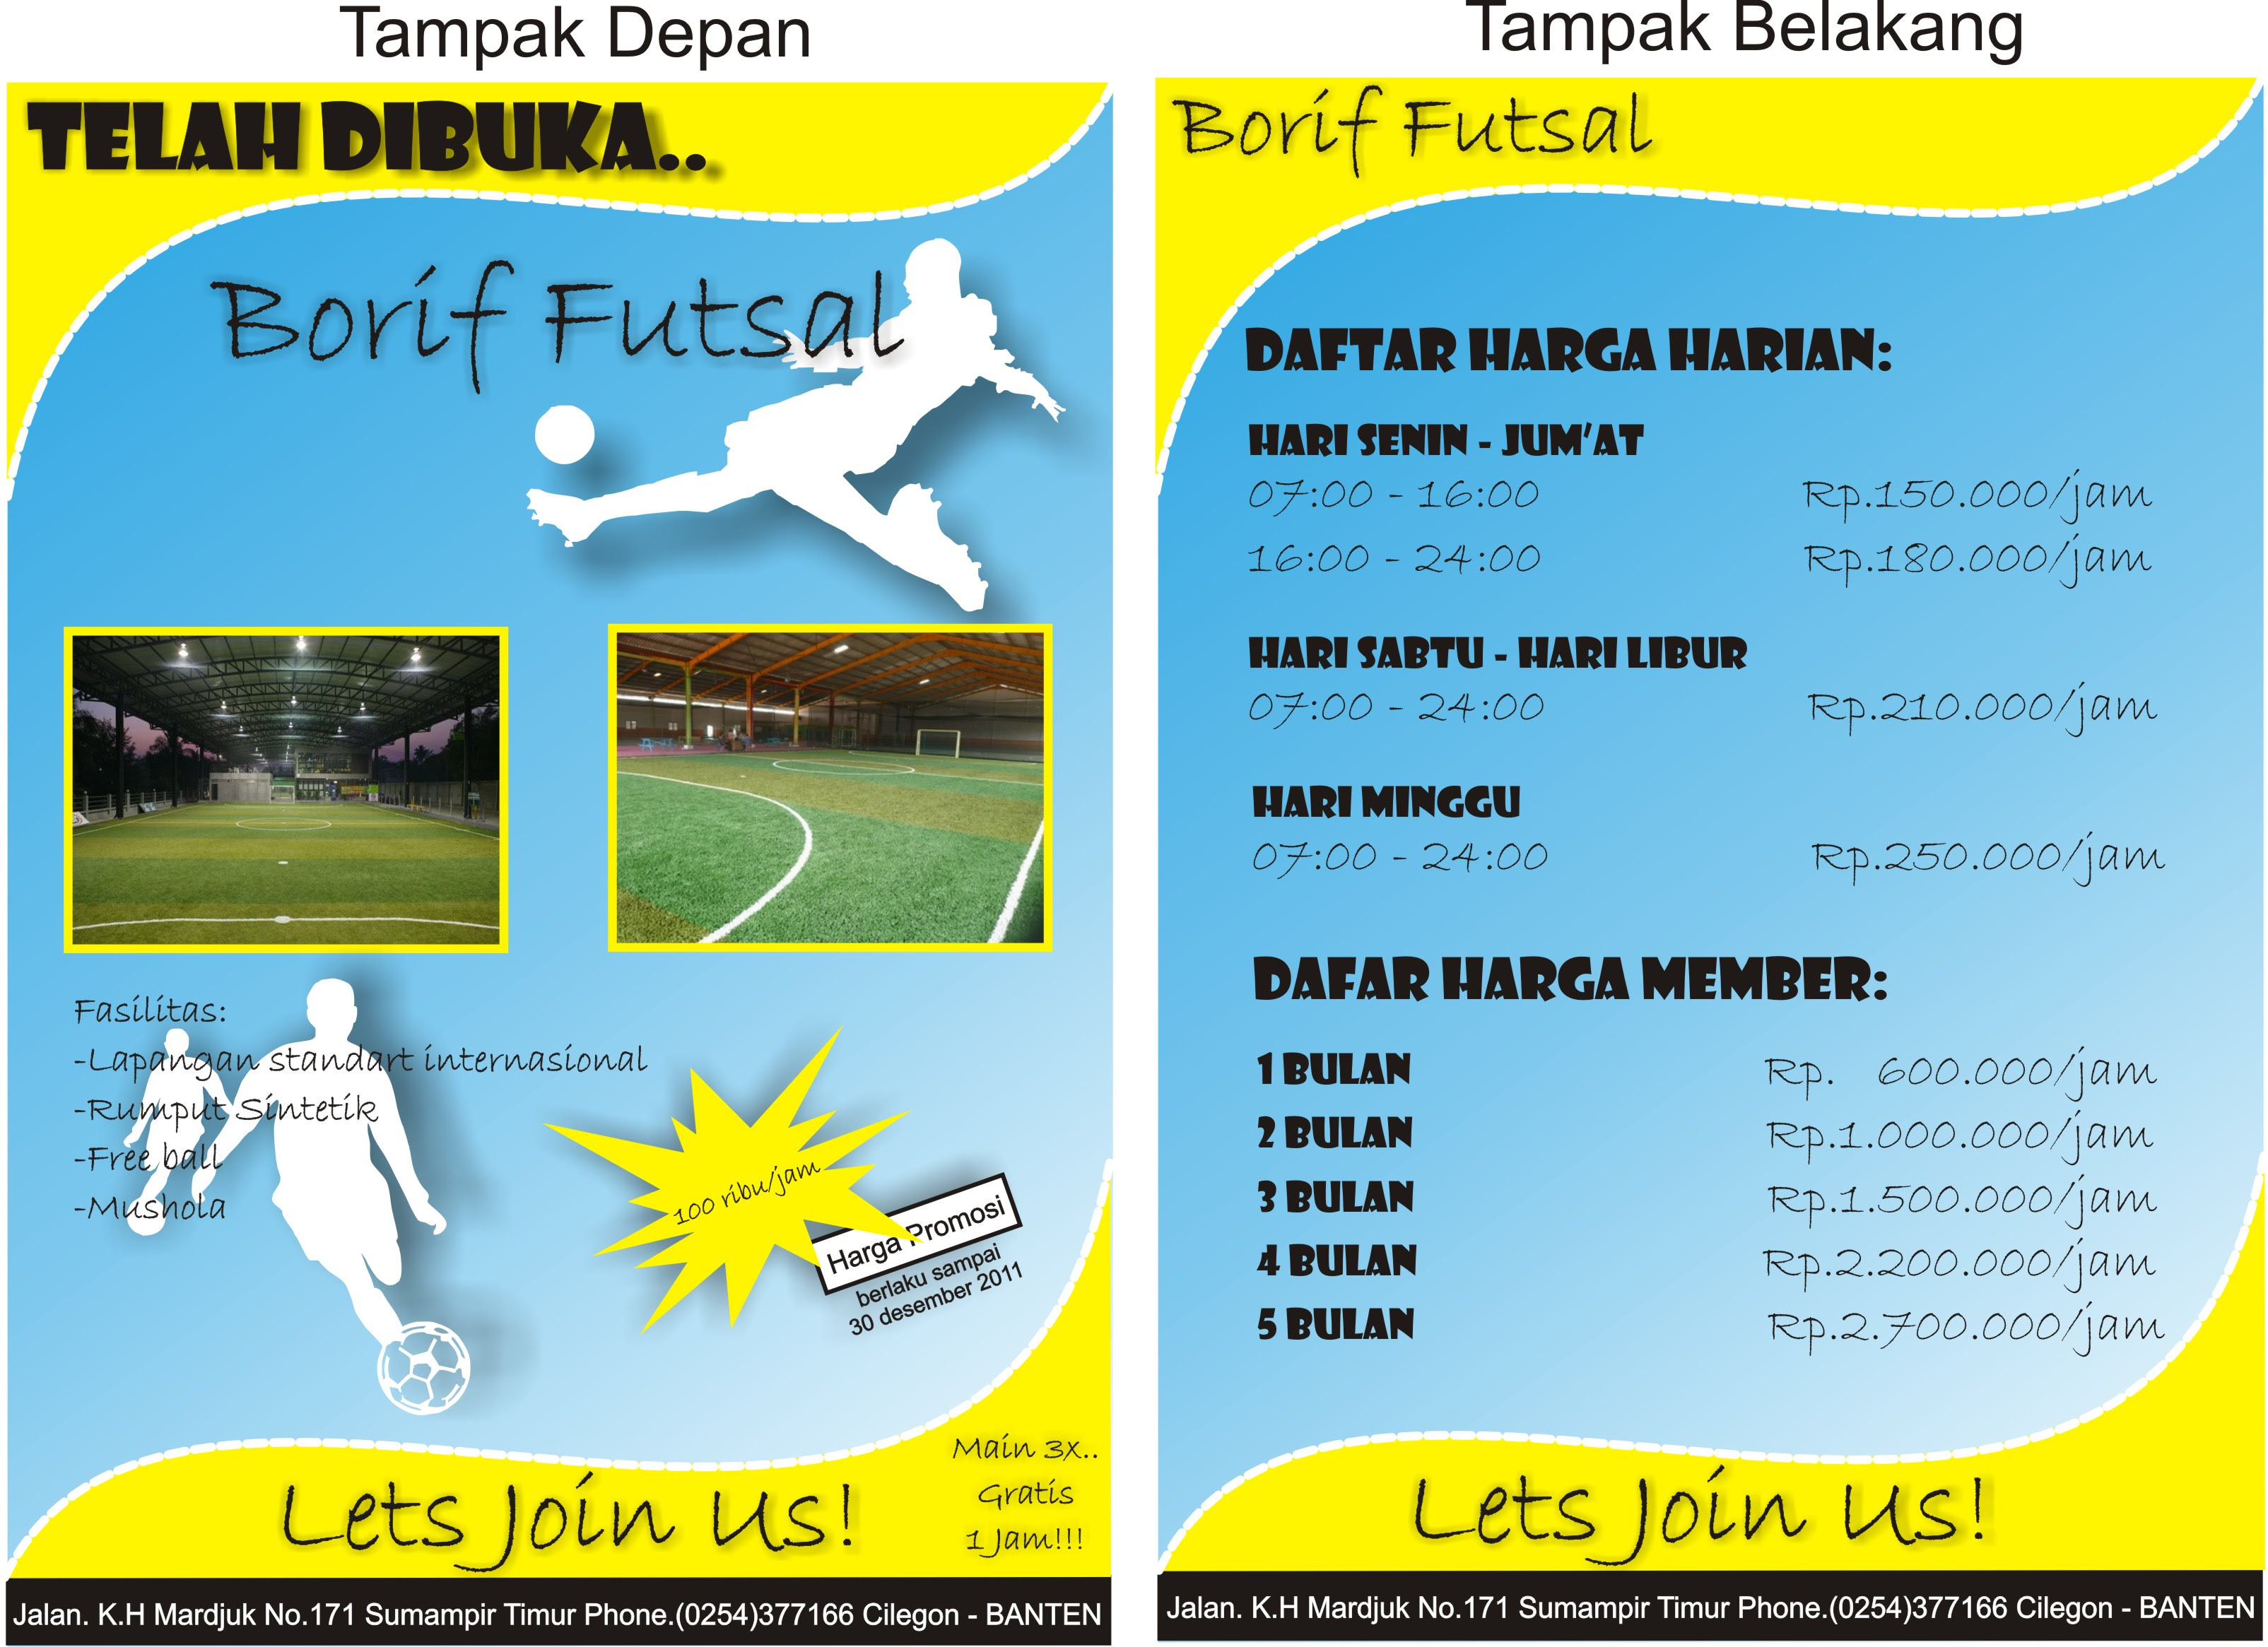 Contoh Banner Futsal - Downlllll